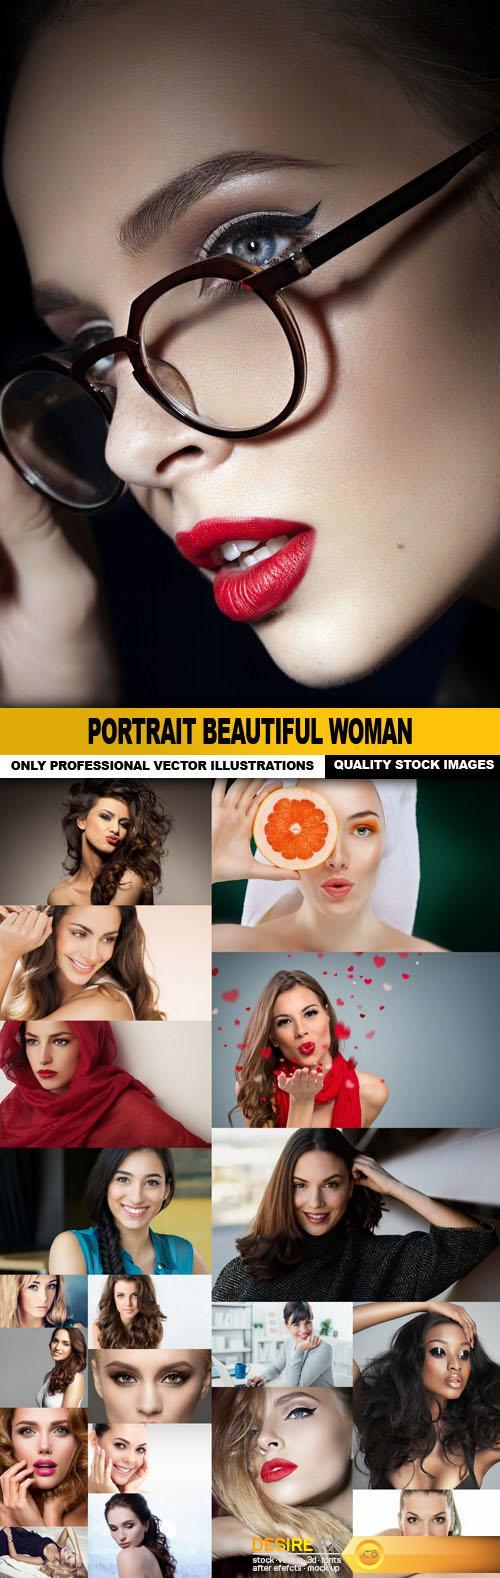 Portrait Beautiful Woman - 20 HQ Images